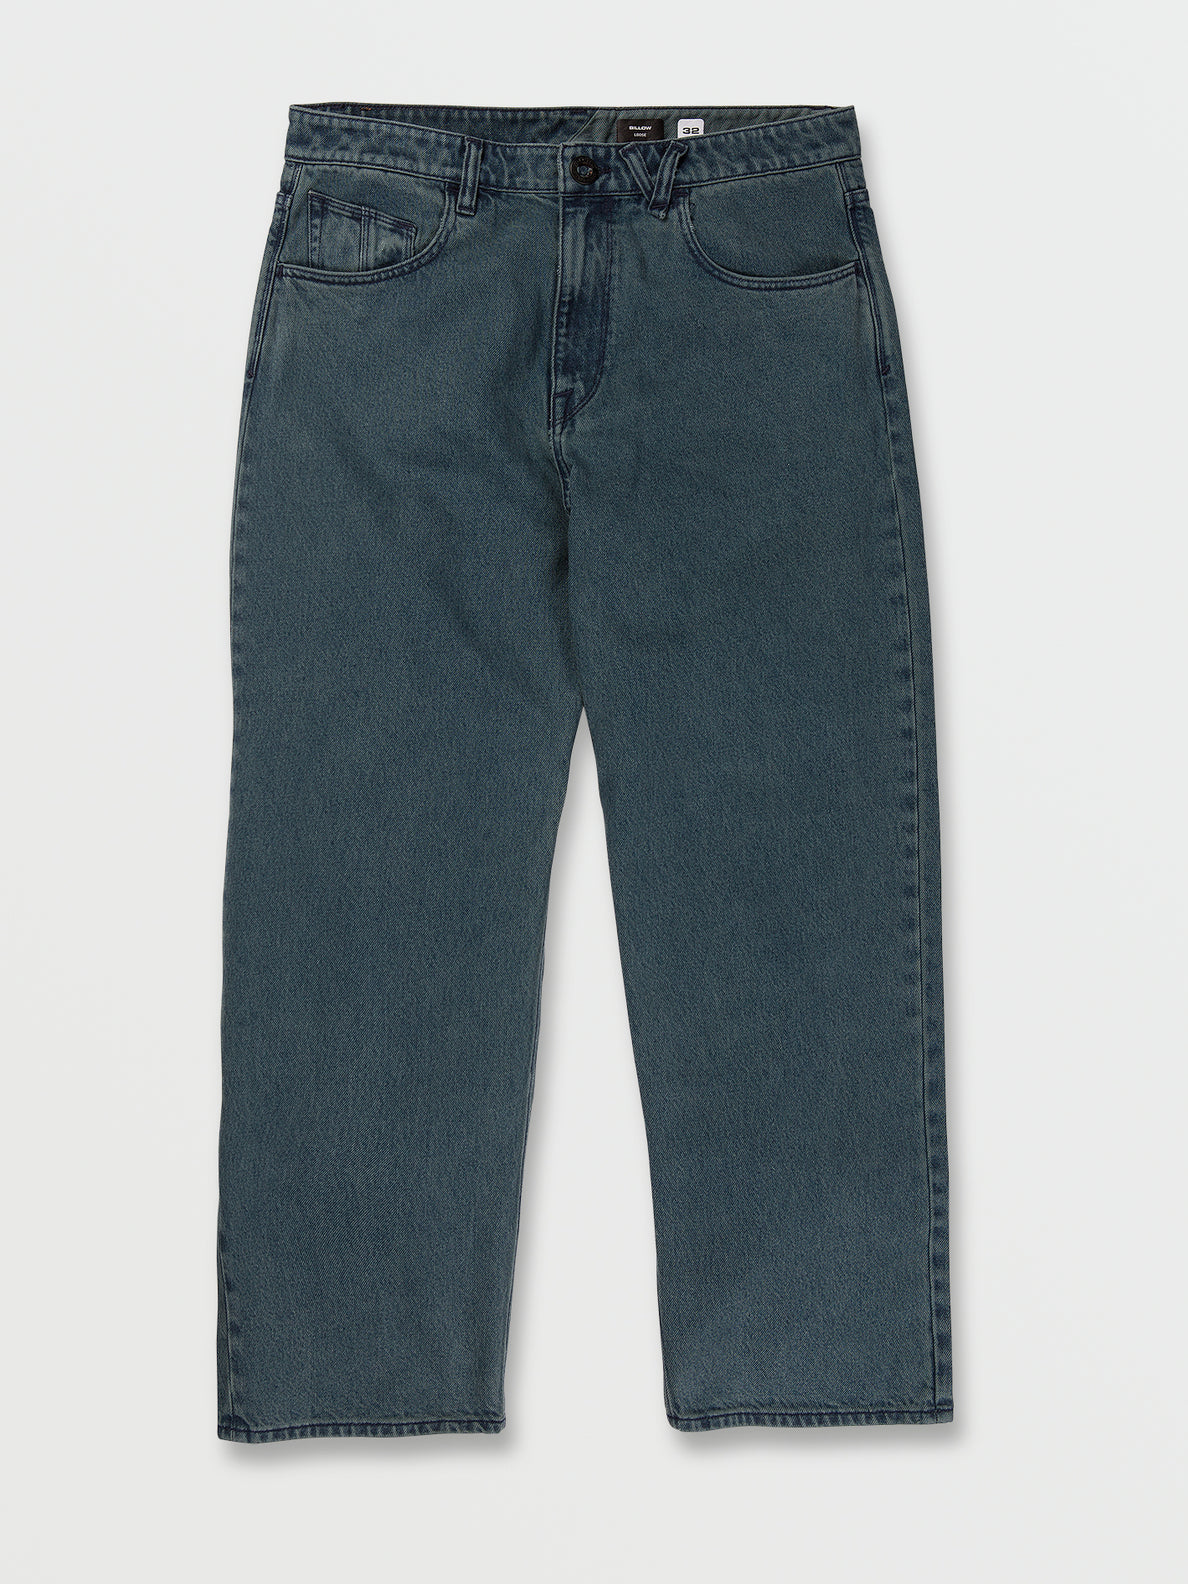 Billow Loose Fit Jeans - Marina Blue (A1932205_MRB) [01]